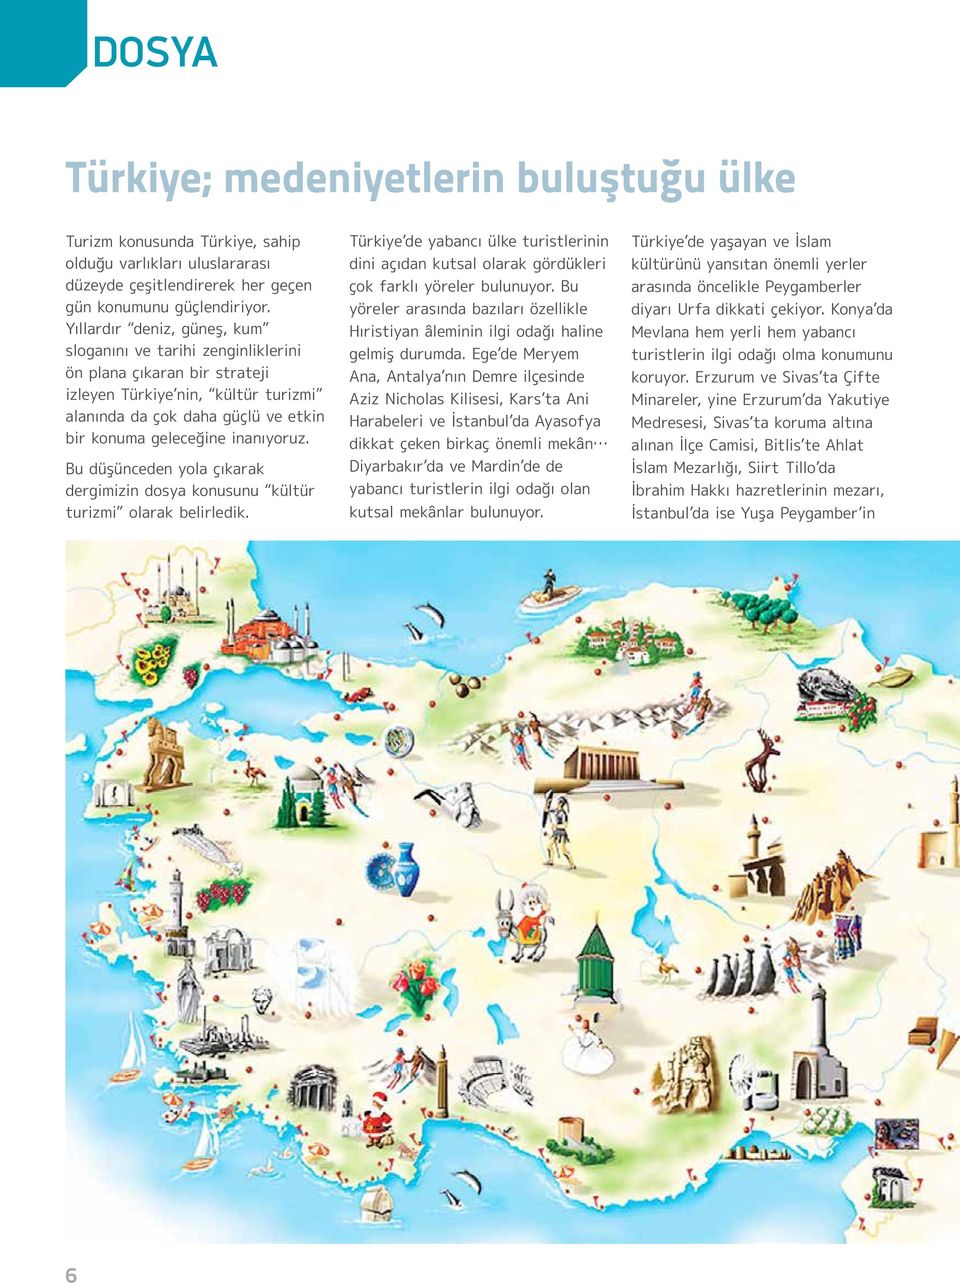 Bu düşünceden yola çıkarak dergimizin dosya konusunu kültür turizmi olarak belirledik. Türkiye de yabancı ülke turistlerinin dini açıdan kutsal olarak gördükleri çok farklı yöreler bulunuyor.